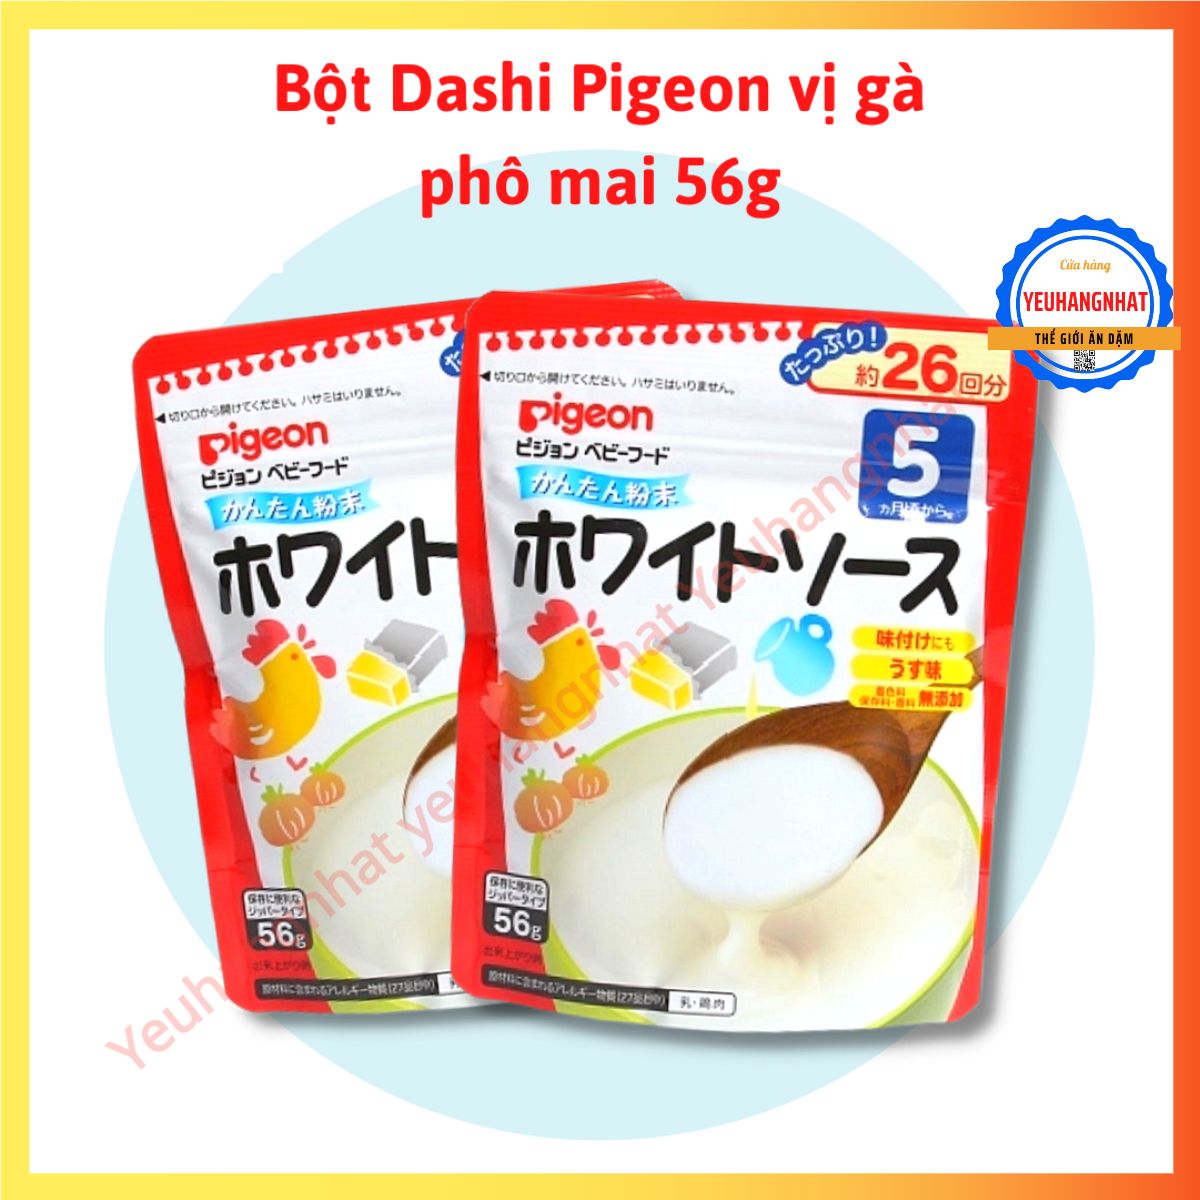 HCM Bột nêm Dashi Pigeon vị gà Phô mai Nhật Bản 56g